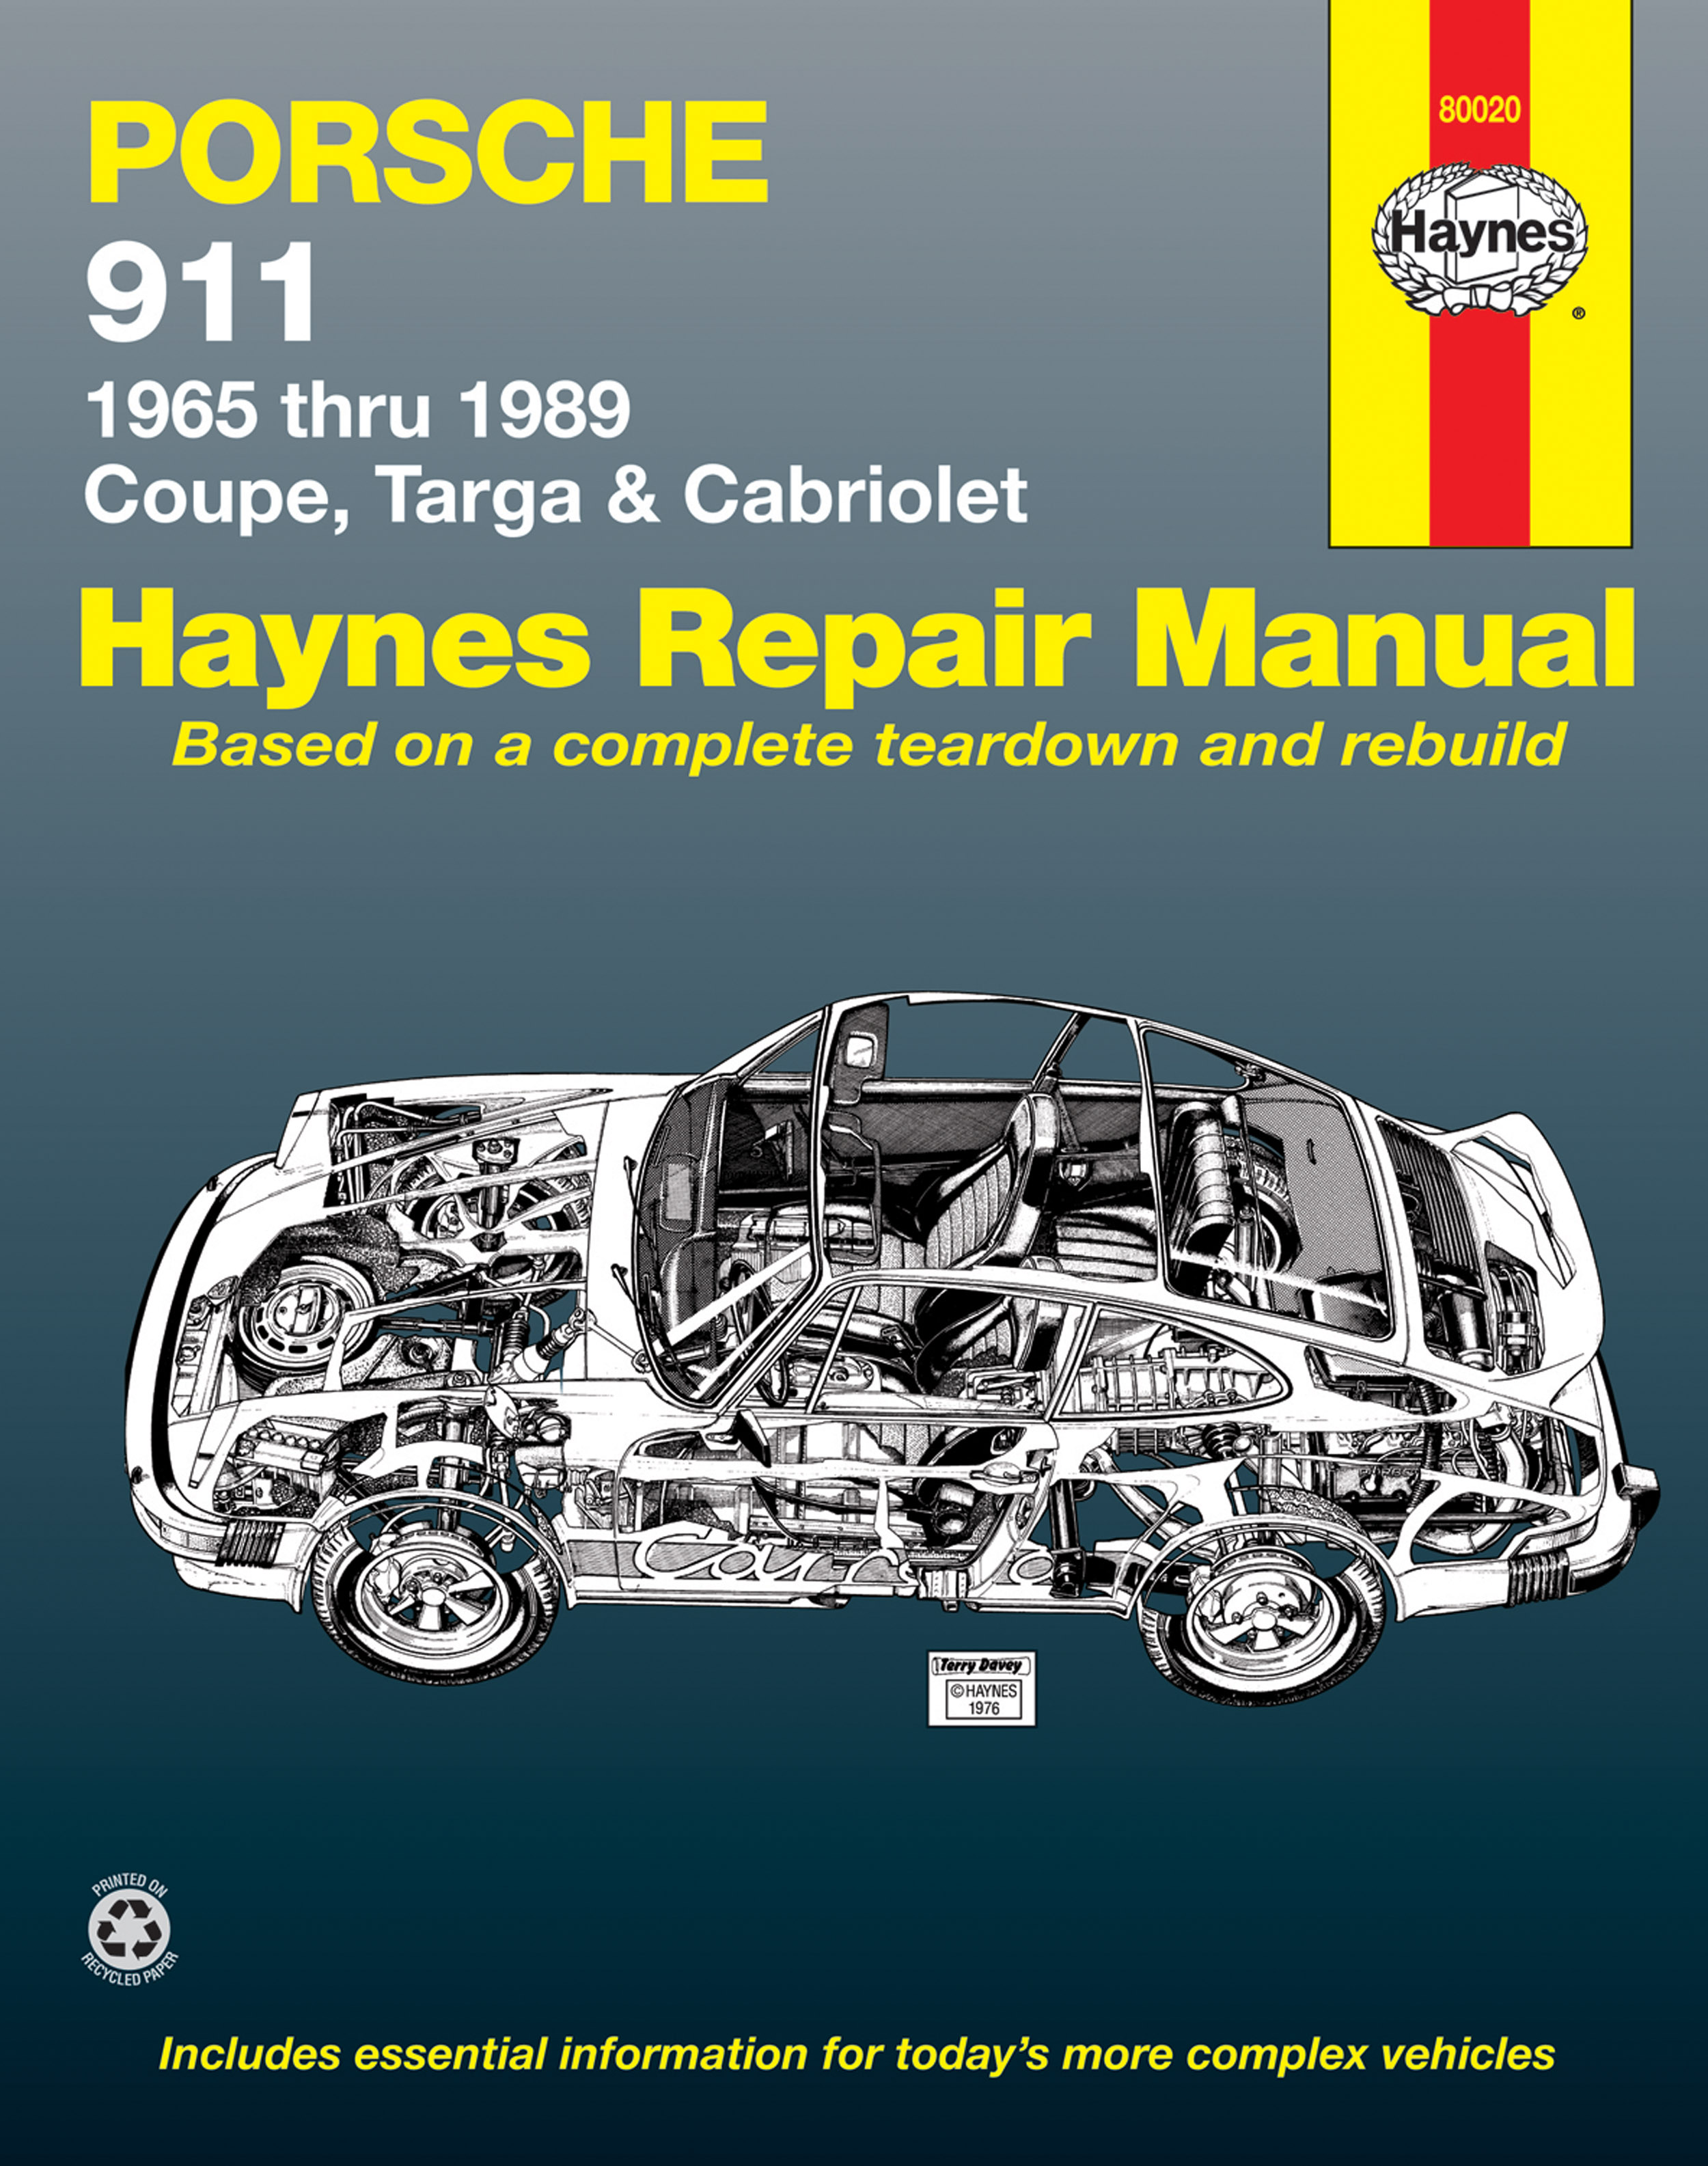 Haynes 99100 Technical Repair Manual 